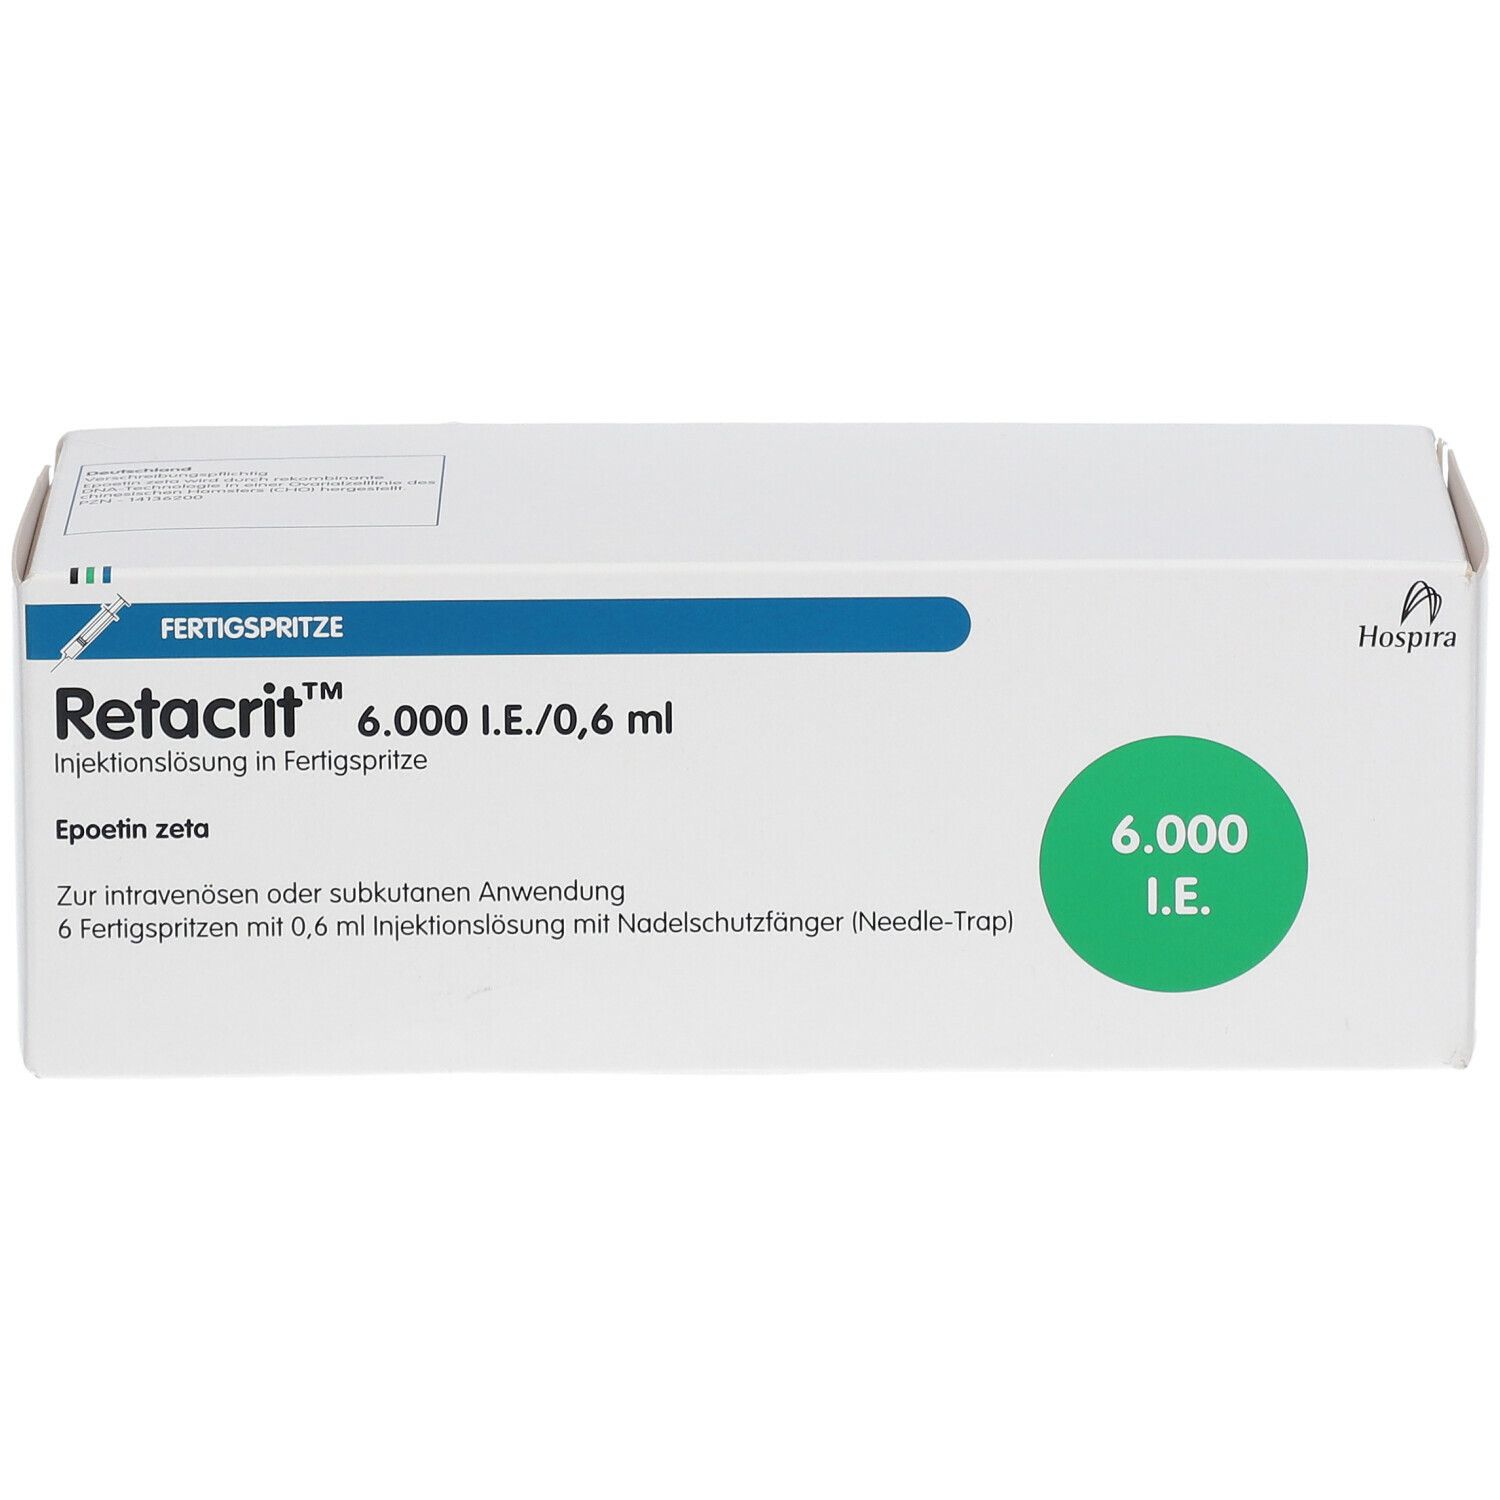 Retacrit™ 6.000 I.E./0,6 ml